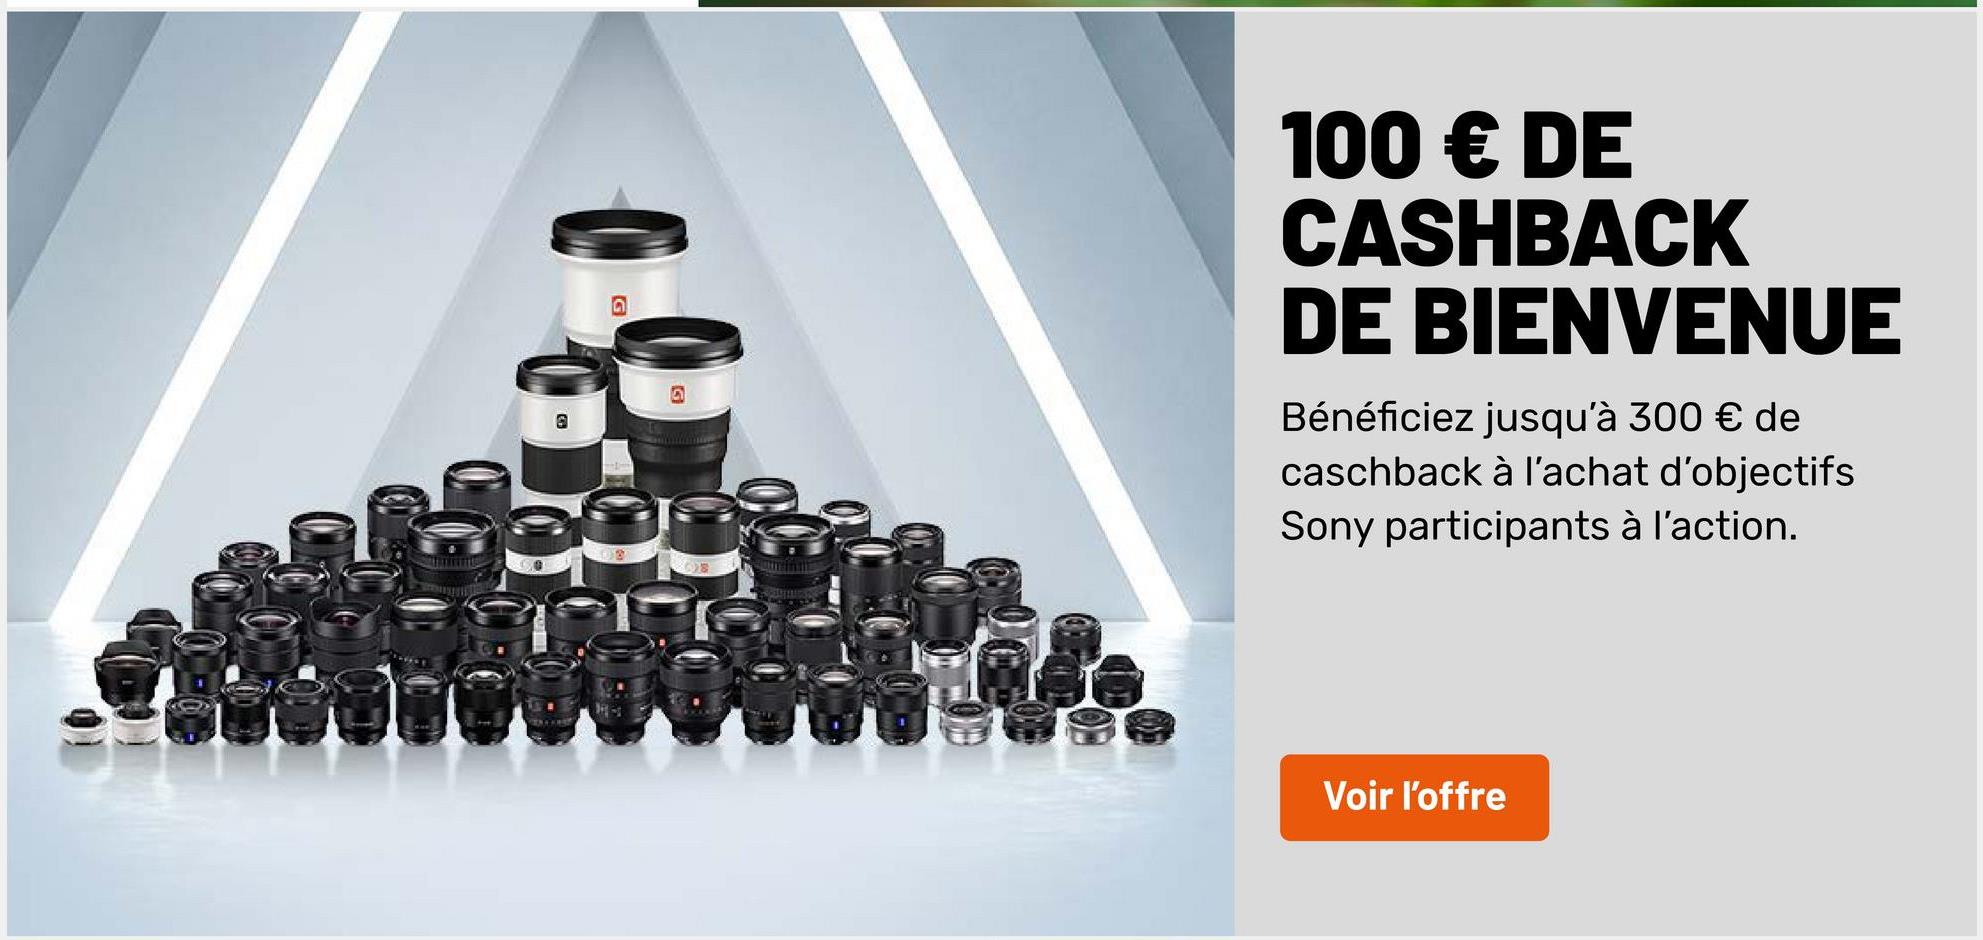 100 € DE
CASHBACK
DE BIENVENUE
@
Bénéficiez jusqu'à 300 € de
caschback à l'achat d'objectifs
Sony participants à l'action.
OS
Voir l'offre
